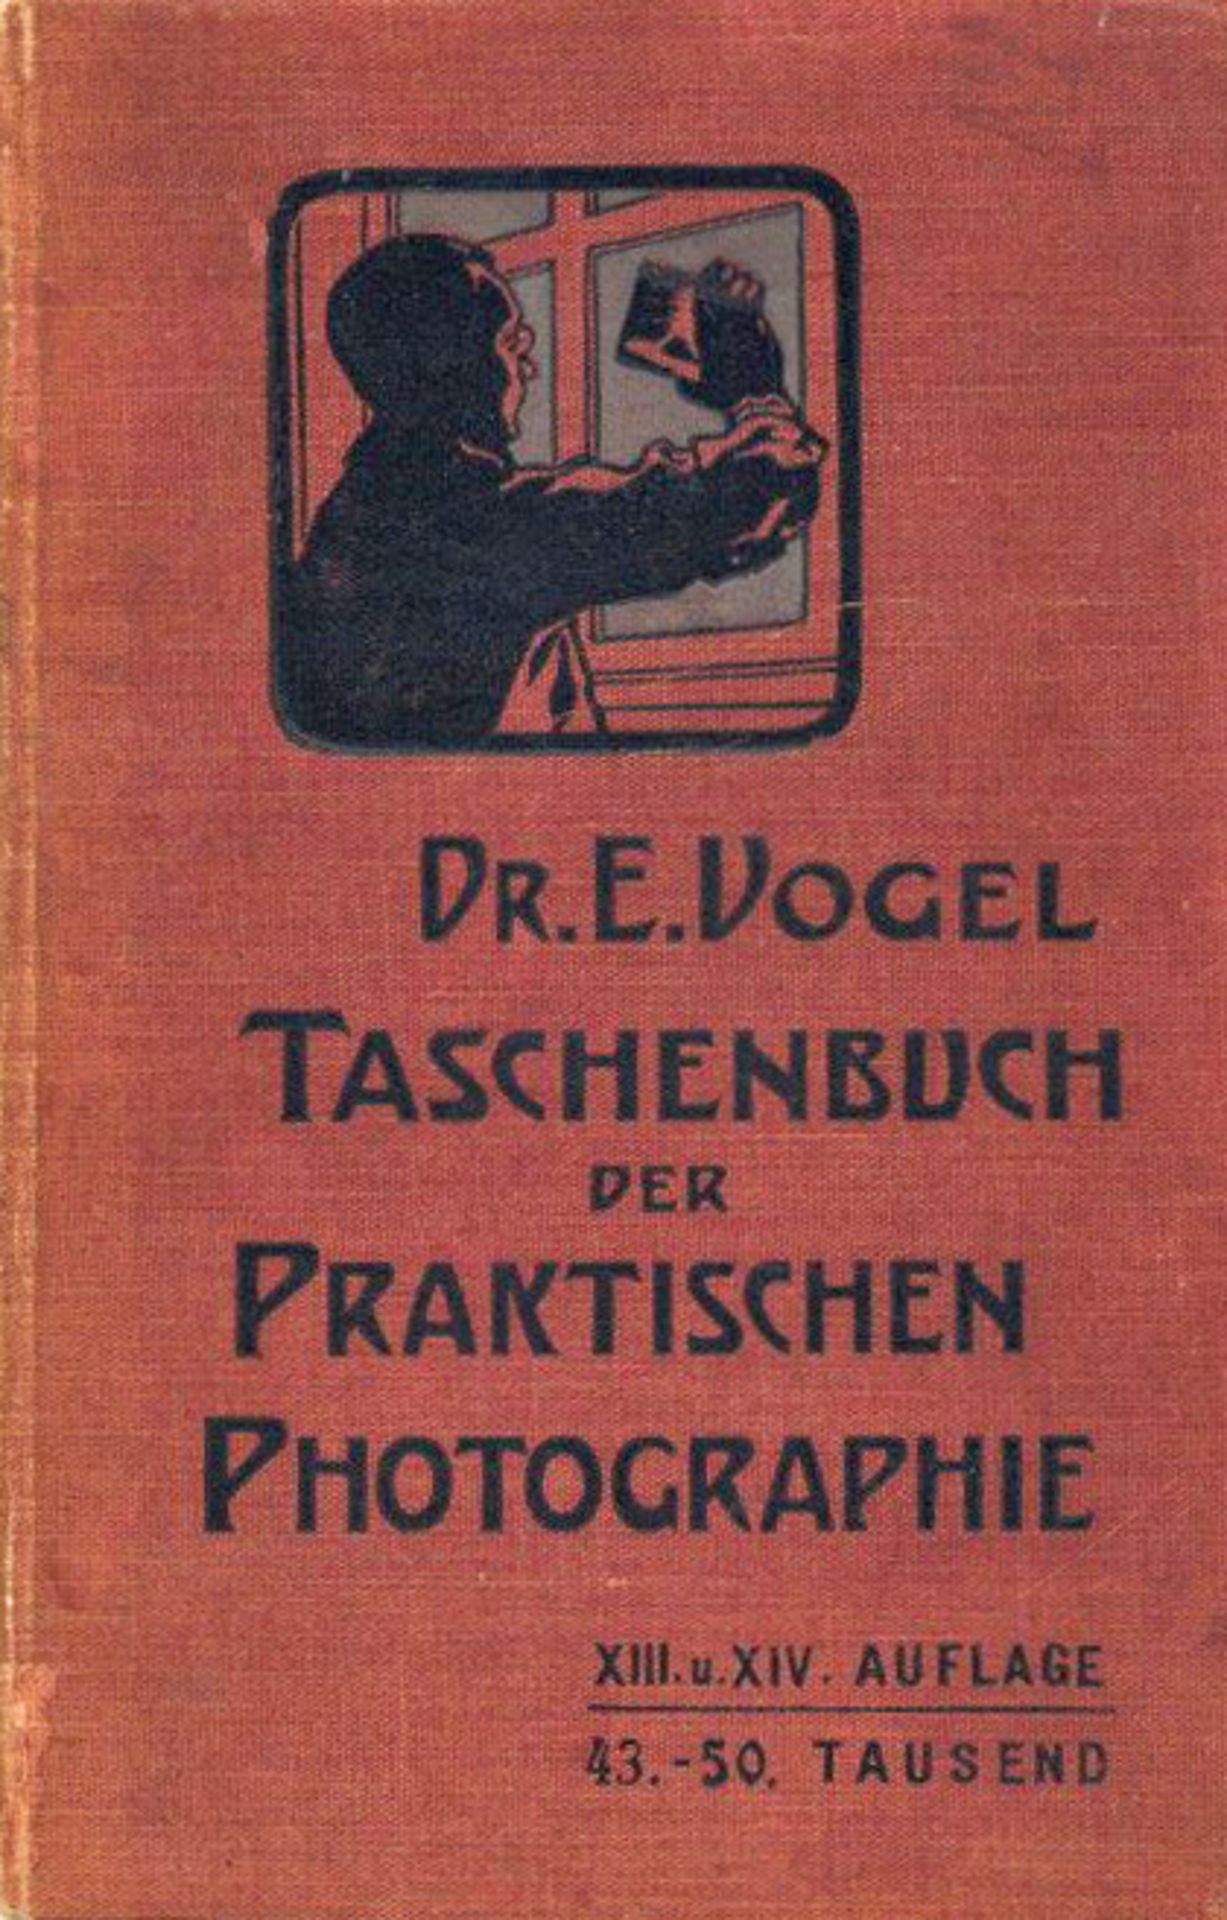 Fotoapparat Photographie Taschenbuch der praktischen Photographie Vogel, E 1905 Verlag Gustav